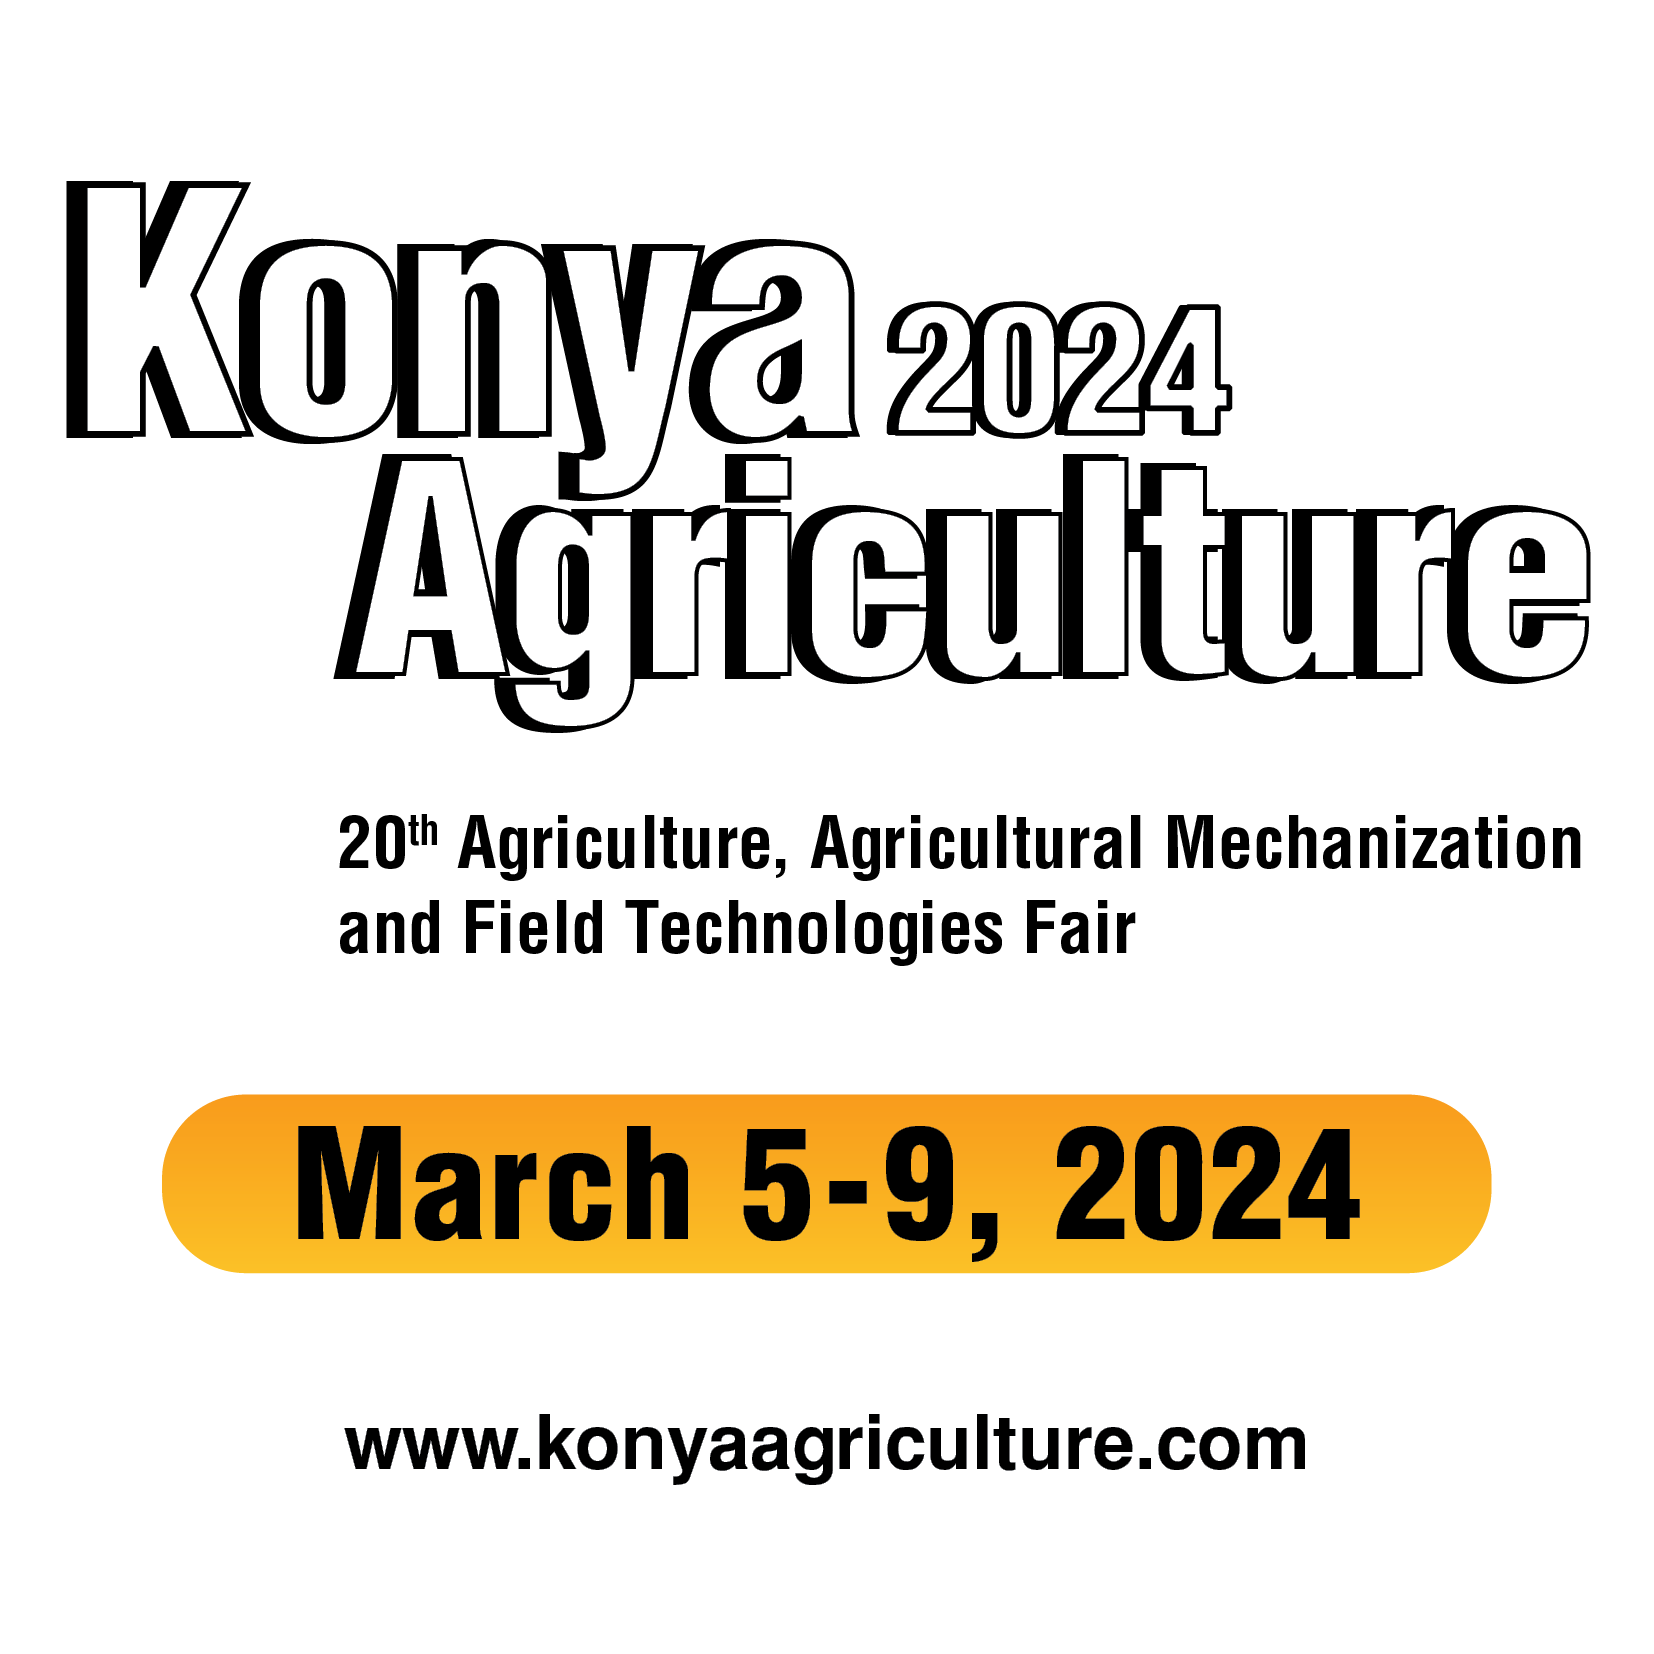 konya agriculture logo 